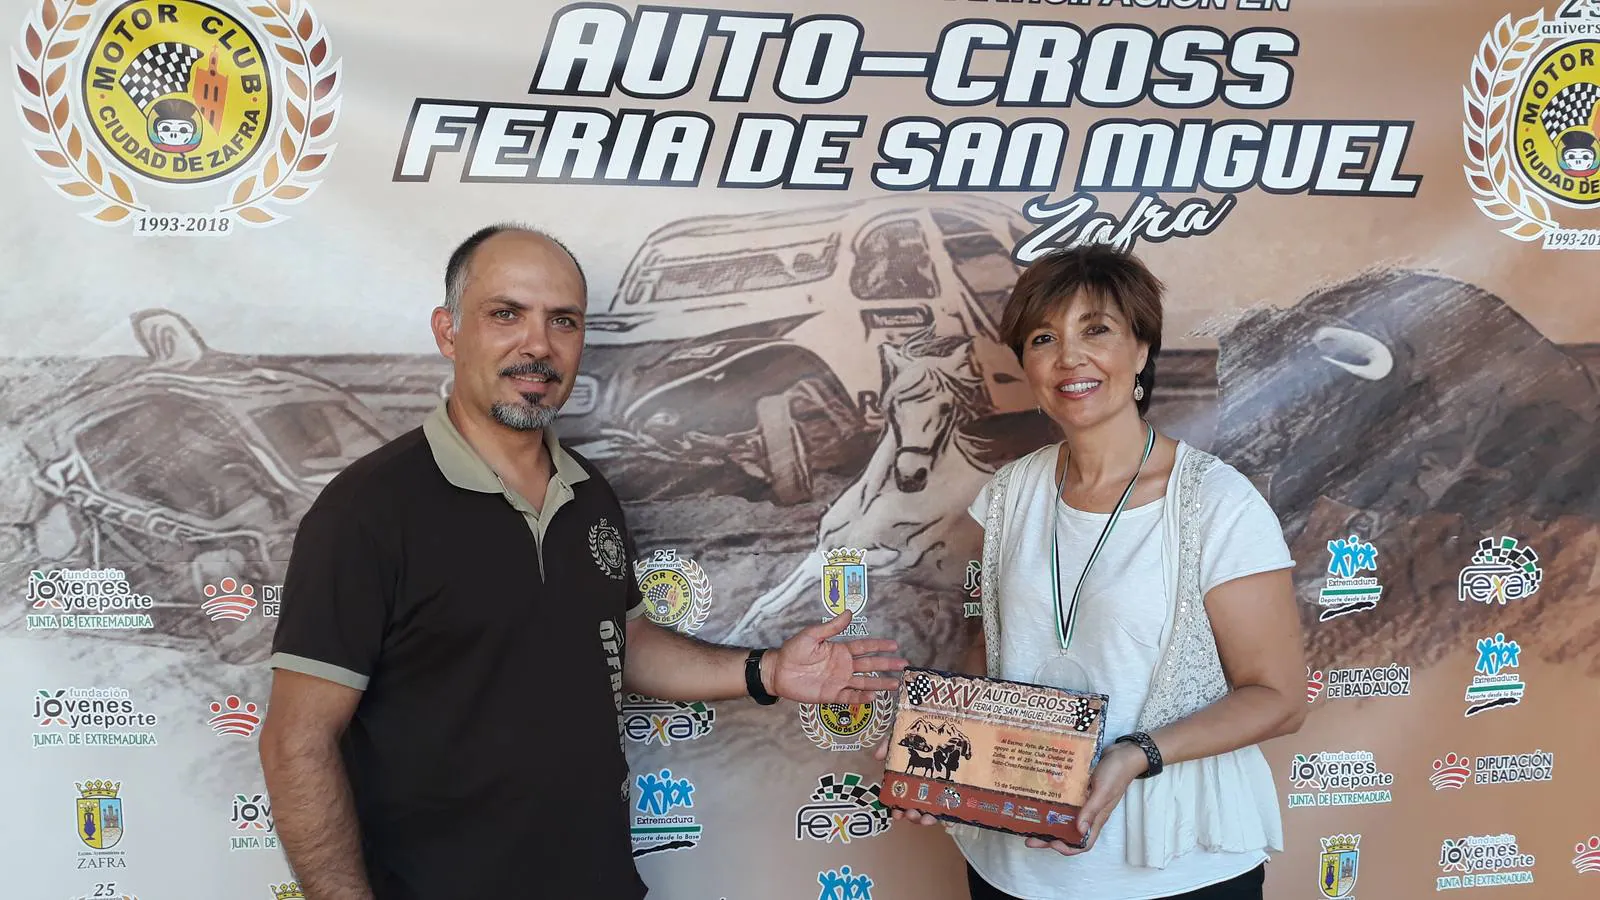 Toni Toro recibió una placa que el motorclub concede al Ayubntamiento por estos 25 años 